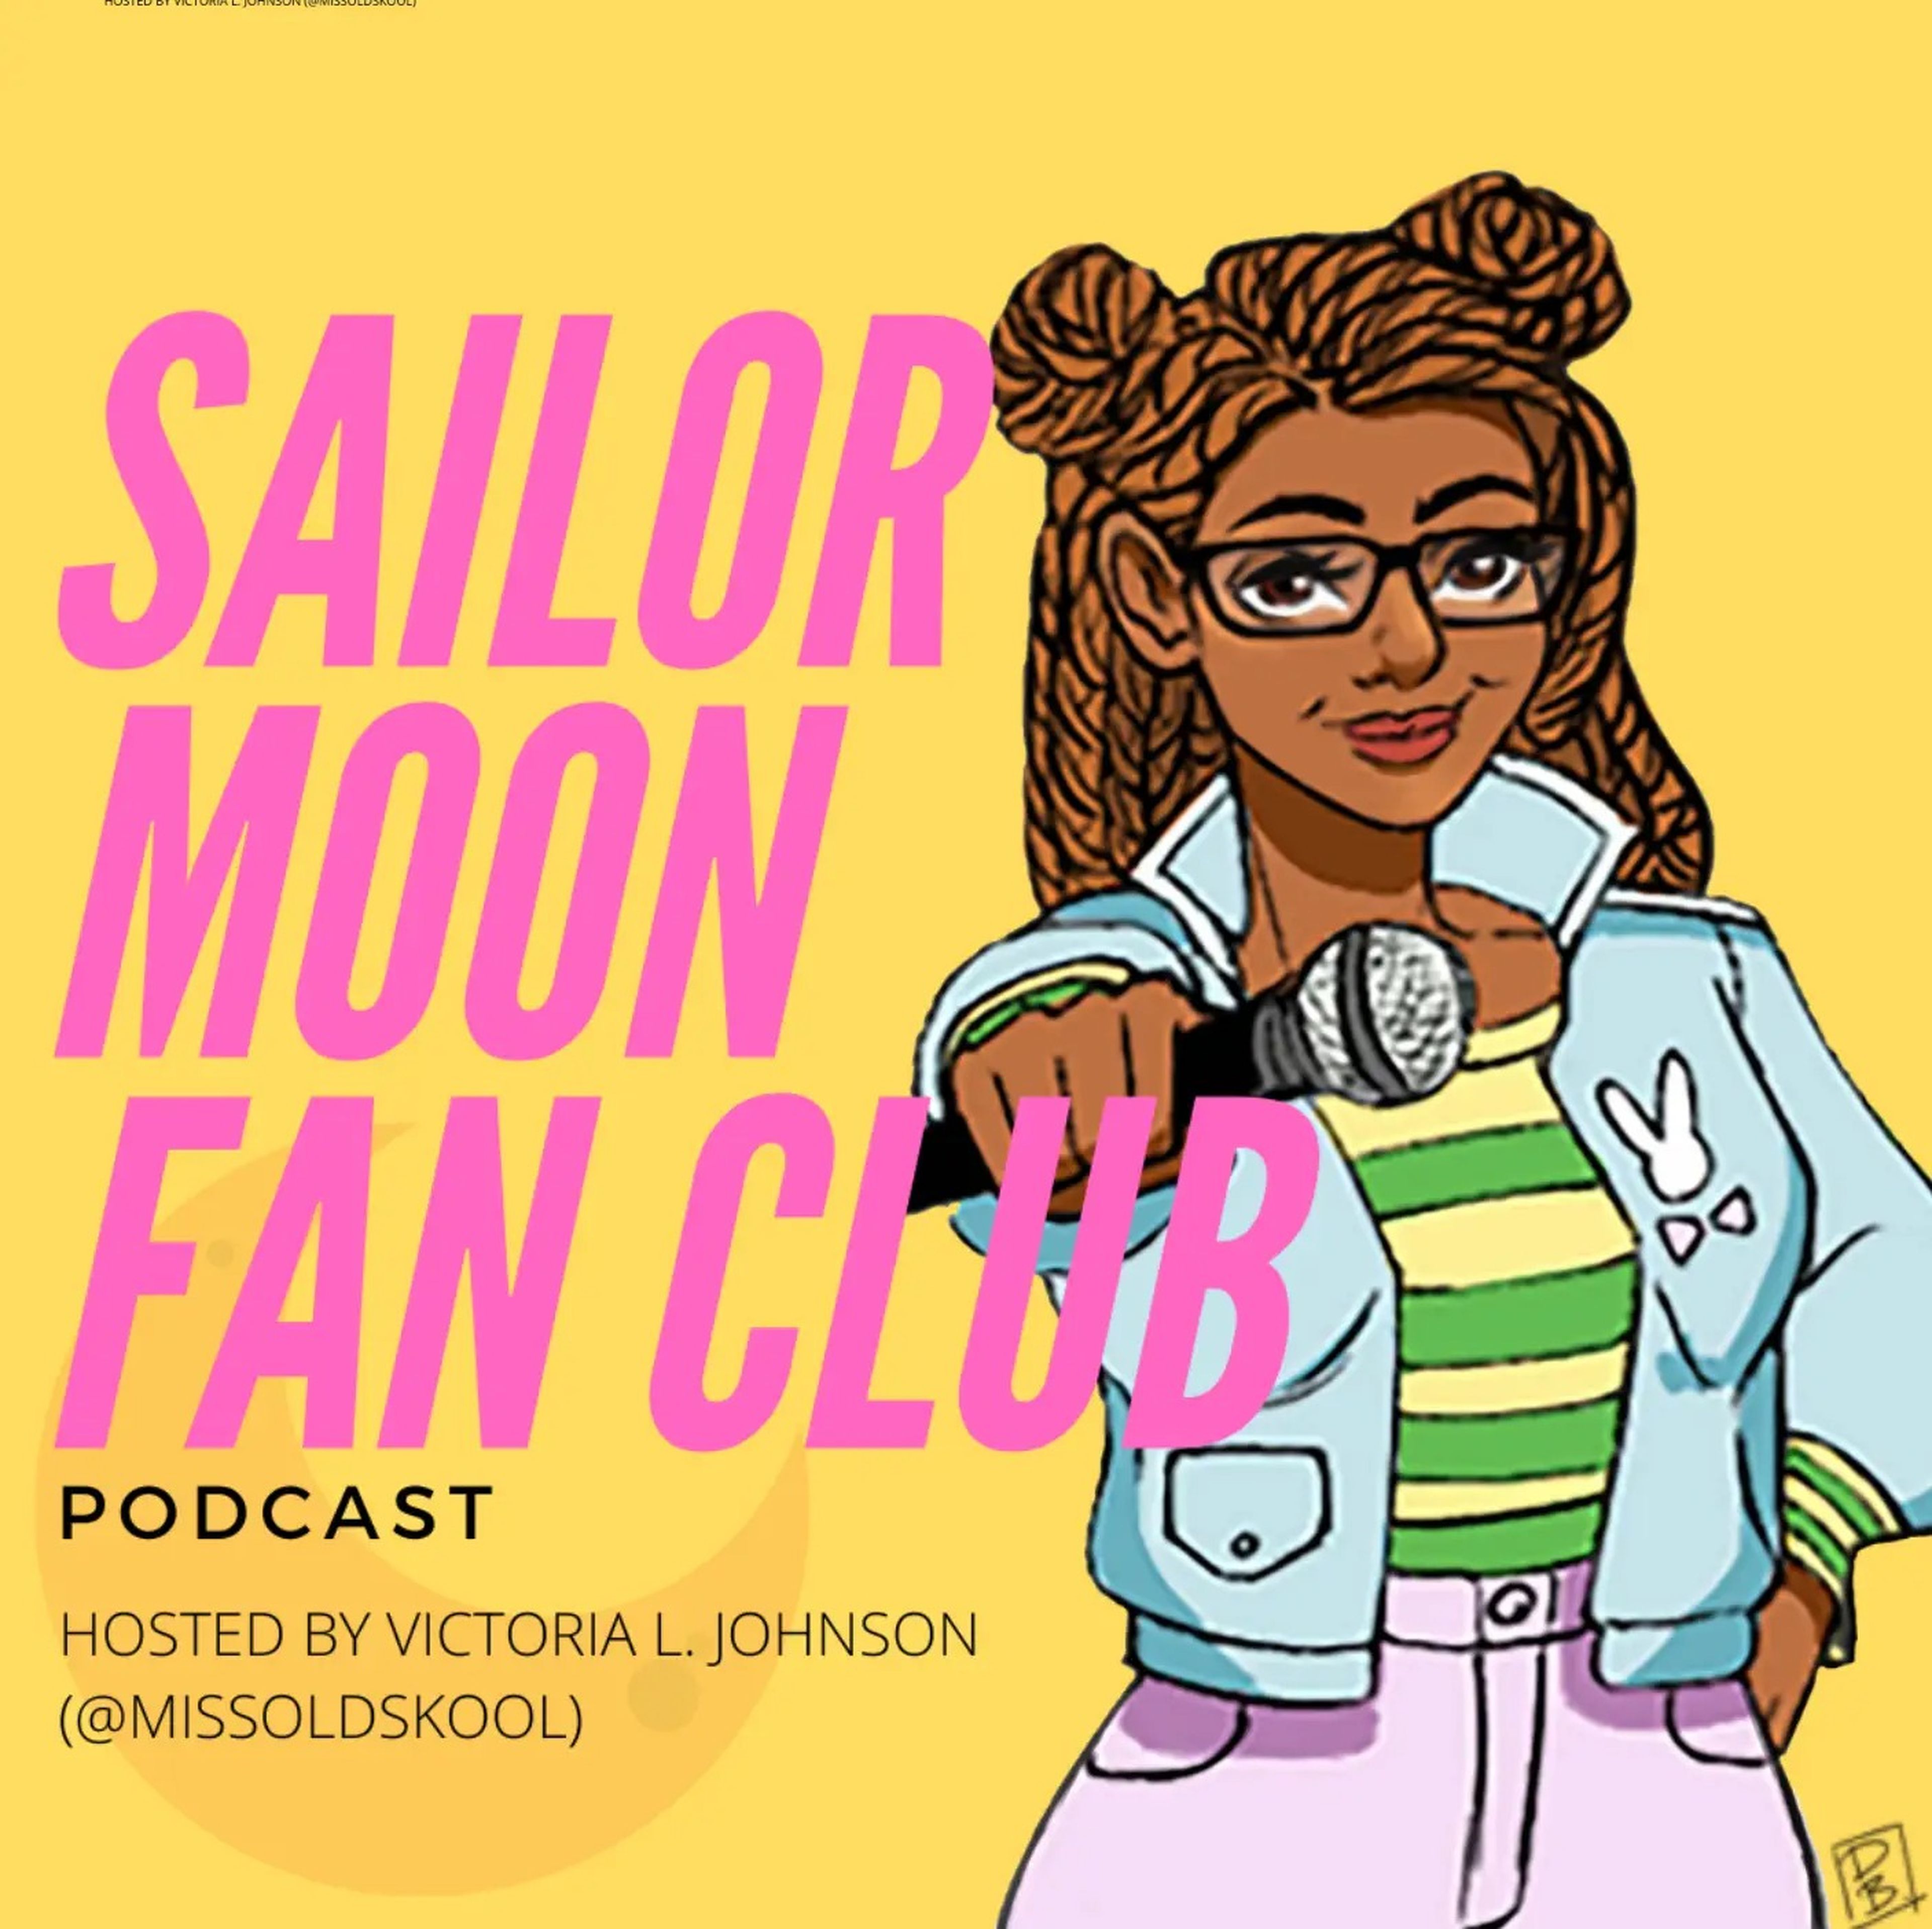 La periodista y fan de 'Sailor Moon' Victoria Johnson tiene su propio podcast sobre la serie.